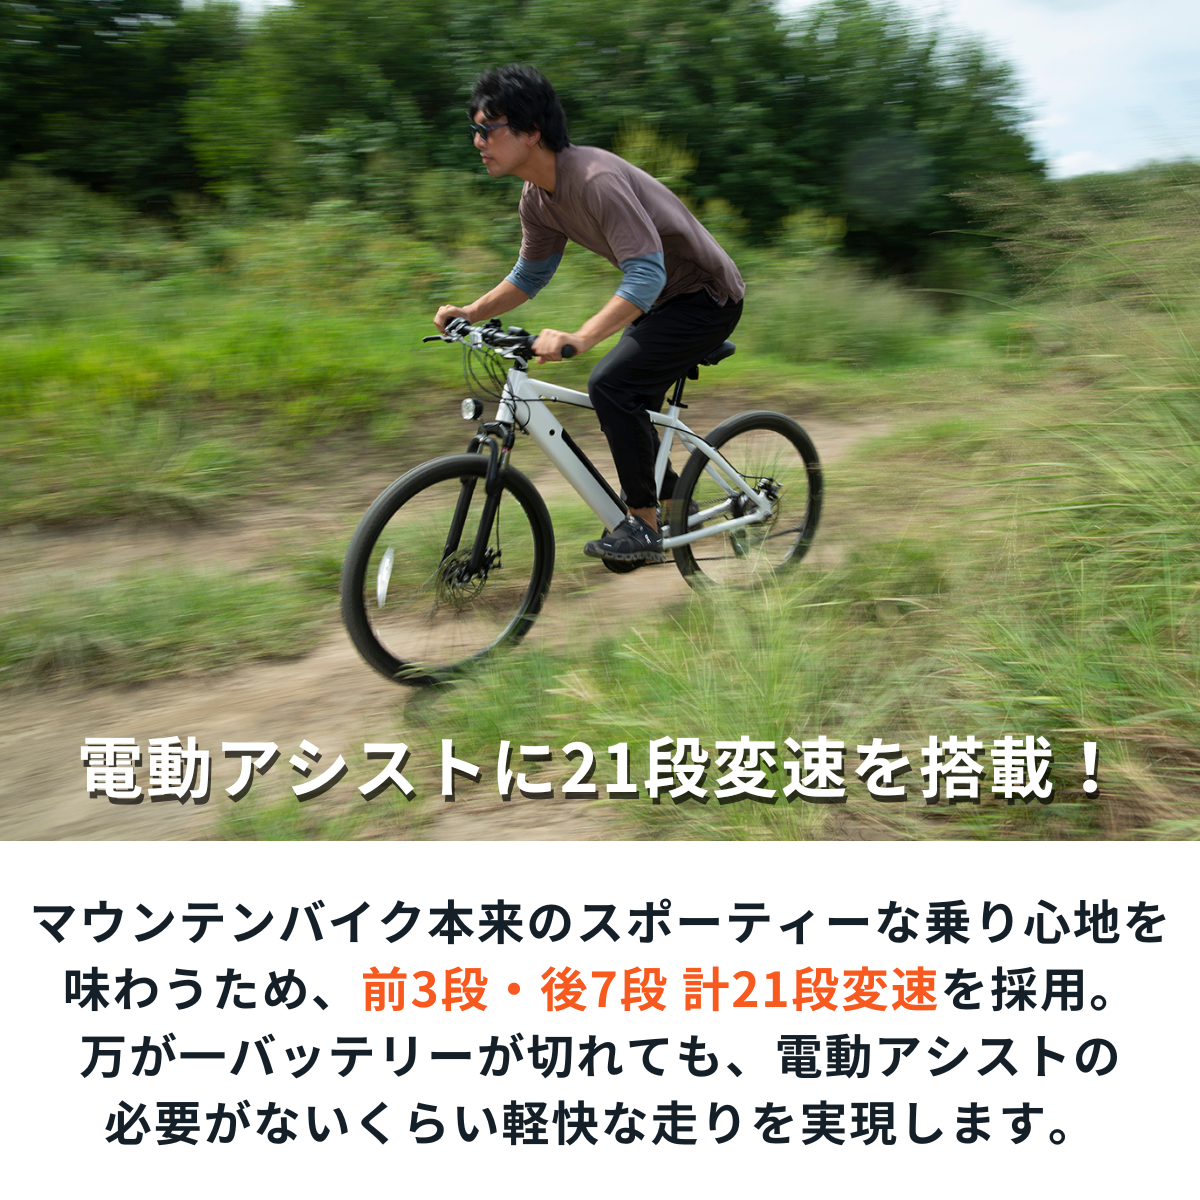 入荷しました【試乗可能】マウンテンバイク×電動アシスト自転車 SWIFT HORSE ★5段階アシスト×21段変速